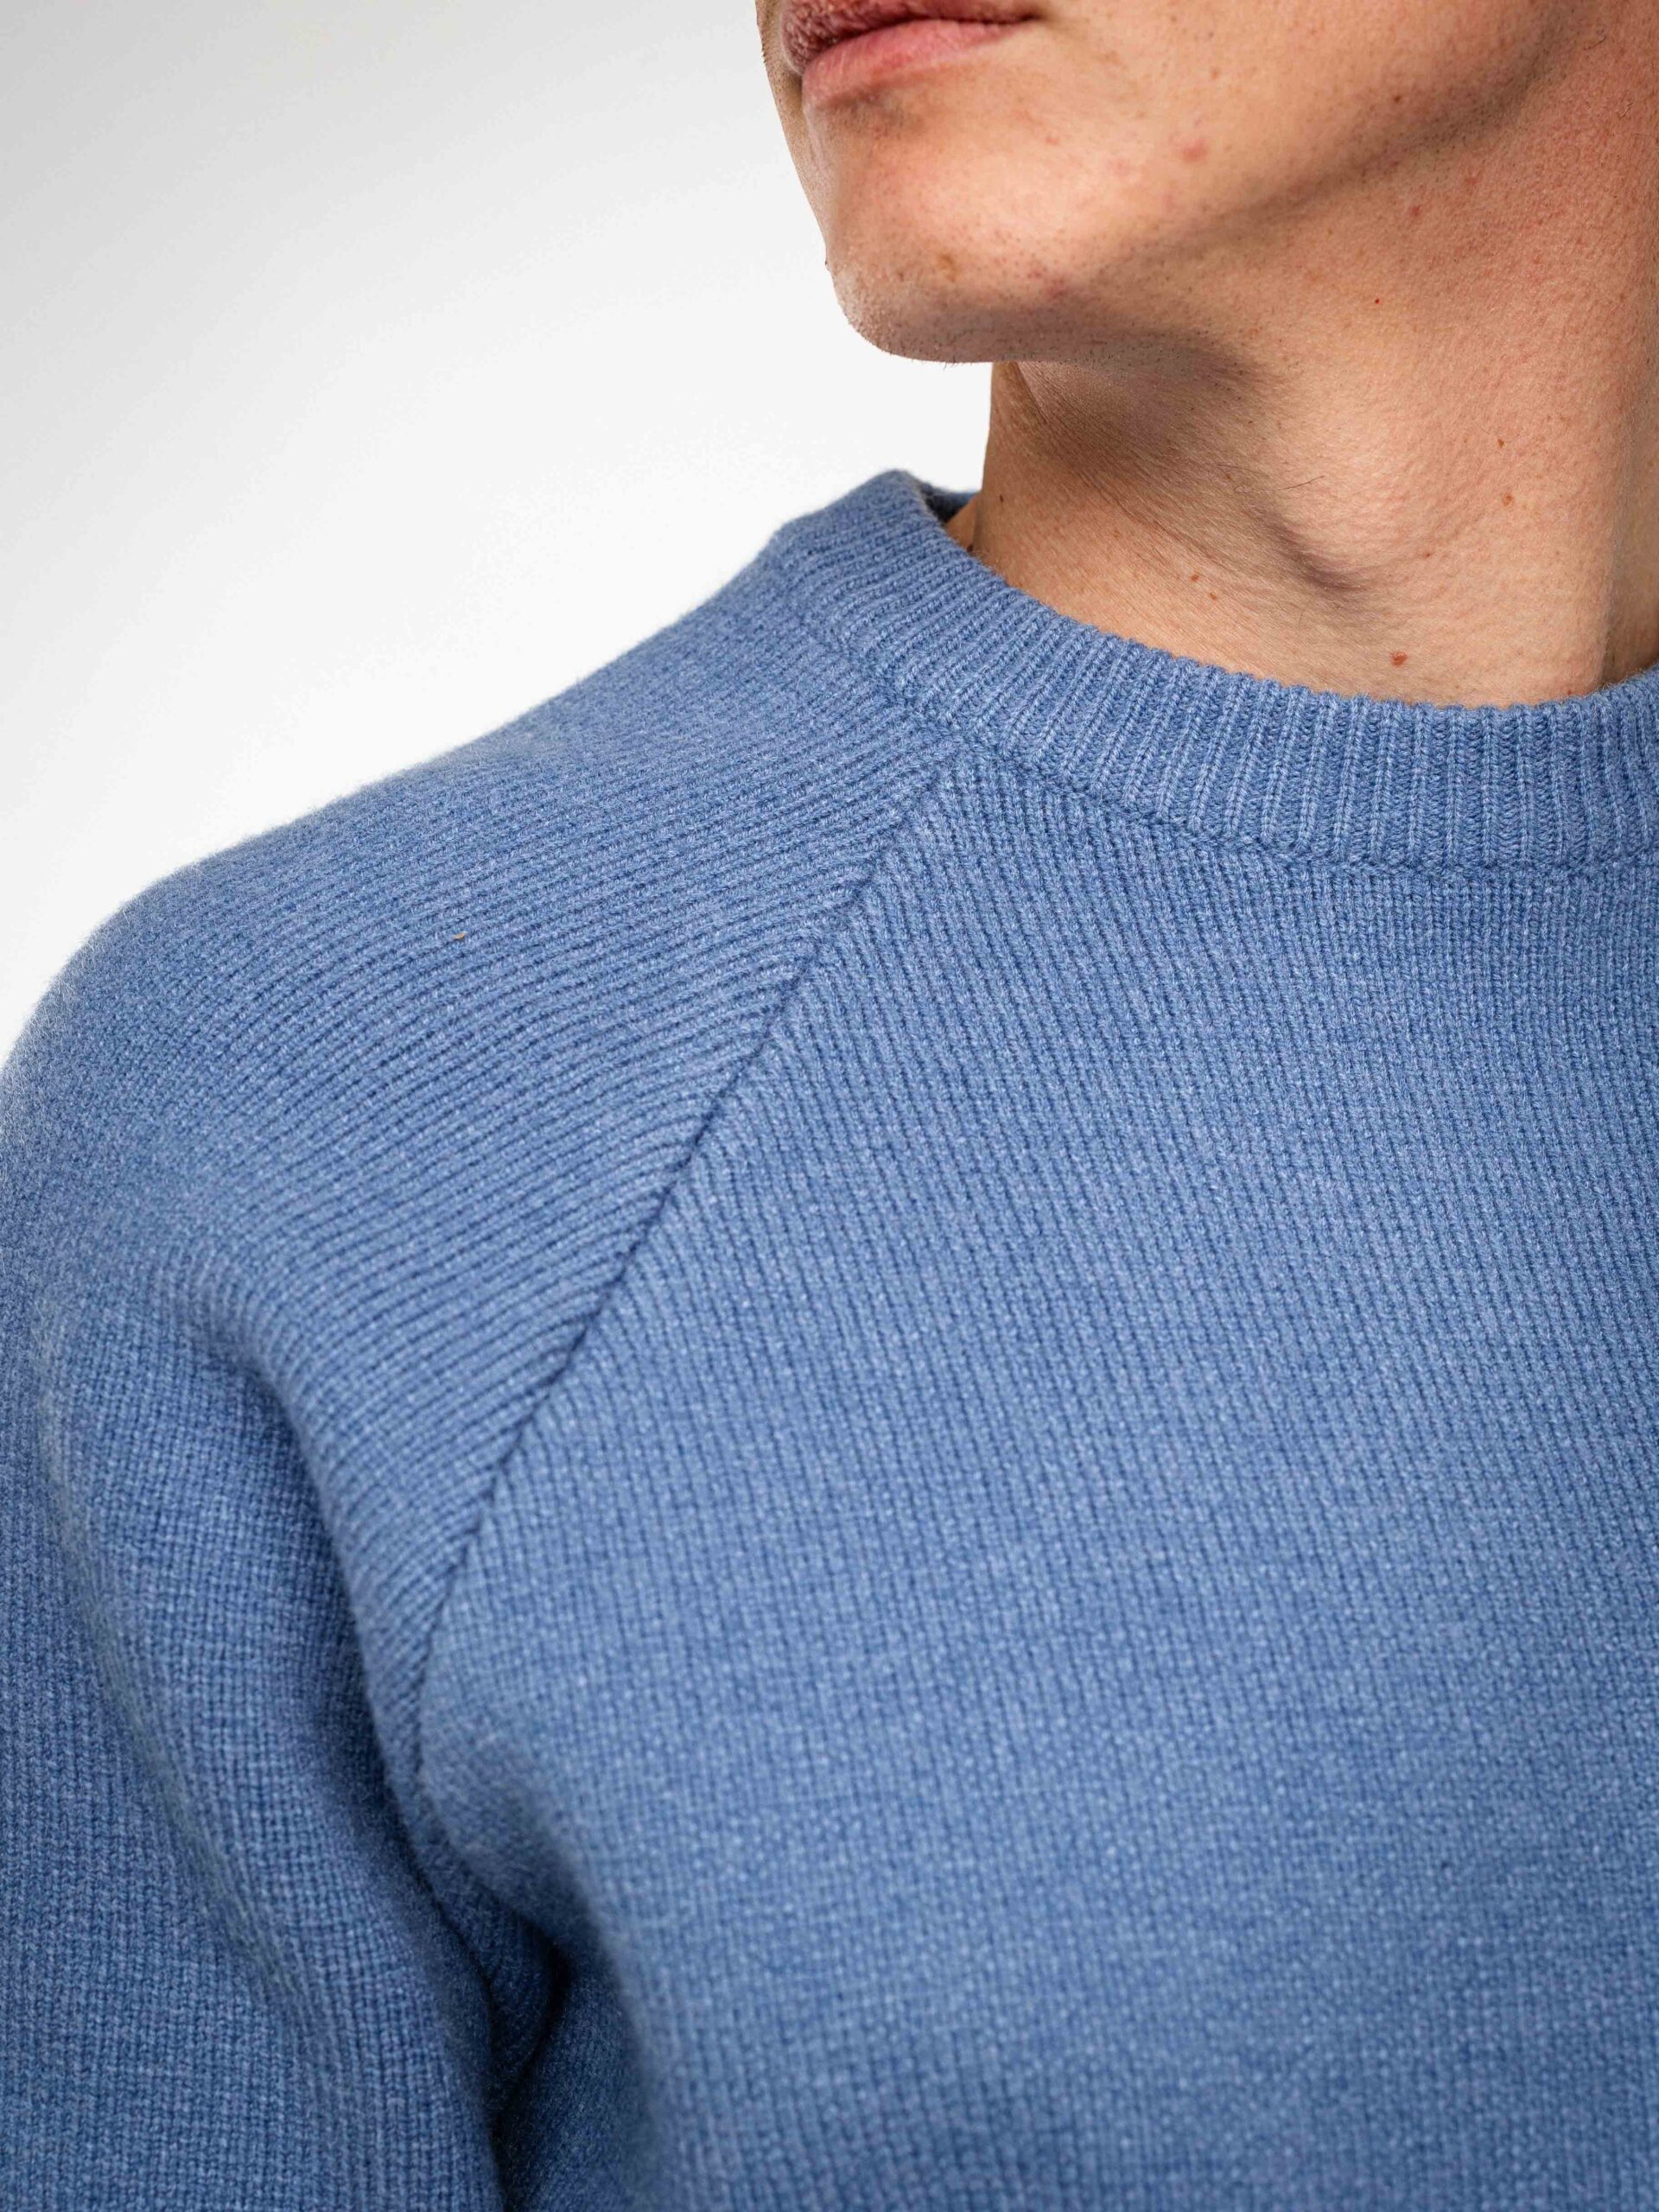 Blue Knit Oversized Sweater 1608 WEAR